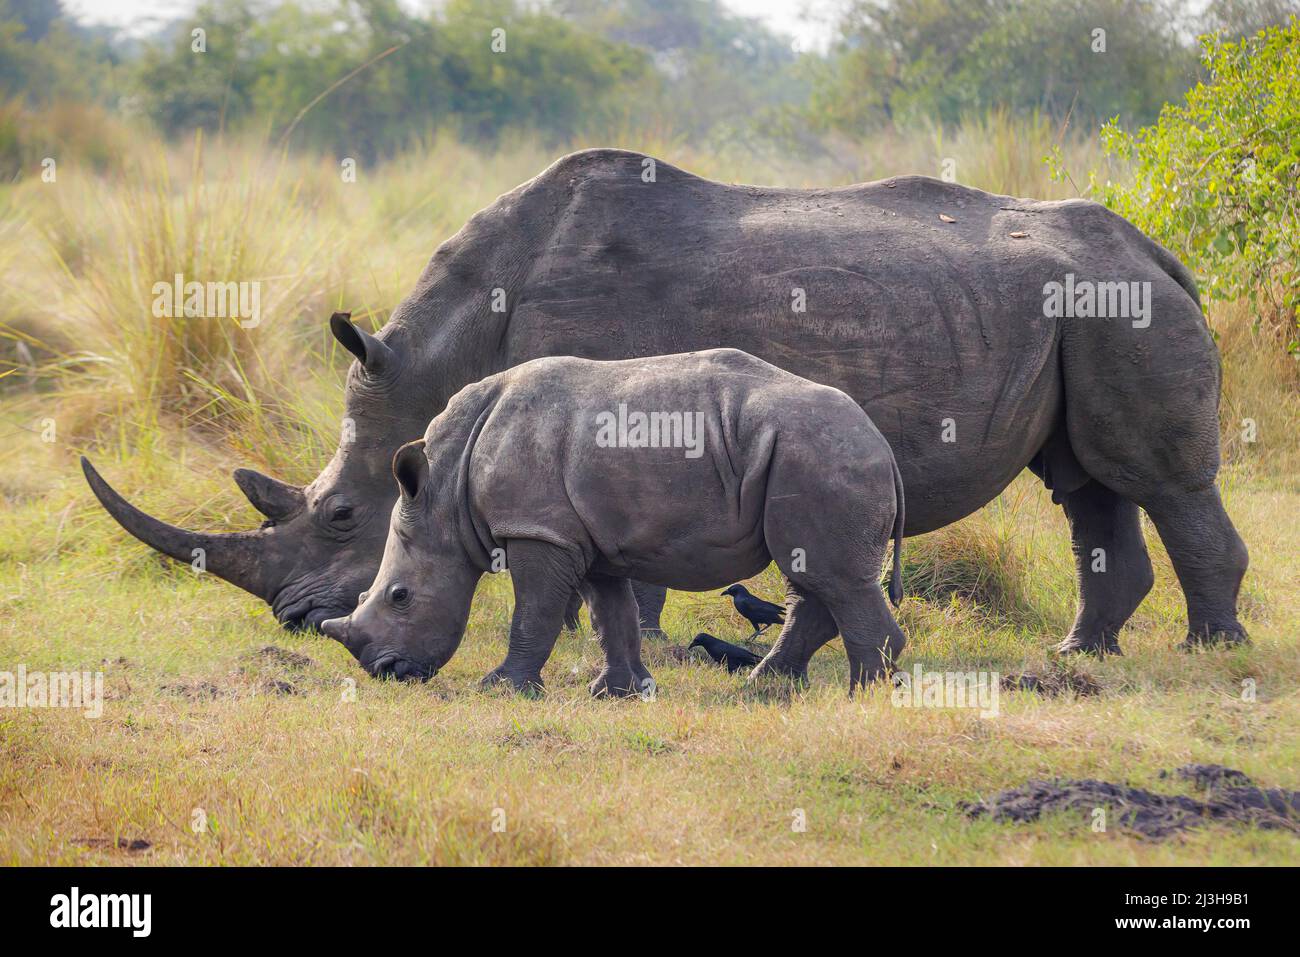 Uganda, Nakasongola District, Ziwa rhino sanctuary, White rhinoceros, Kori and her 5 month baby Stock Photo